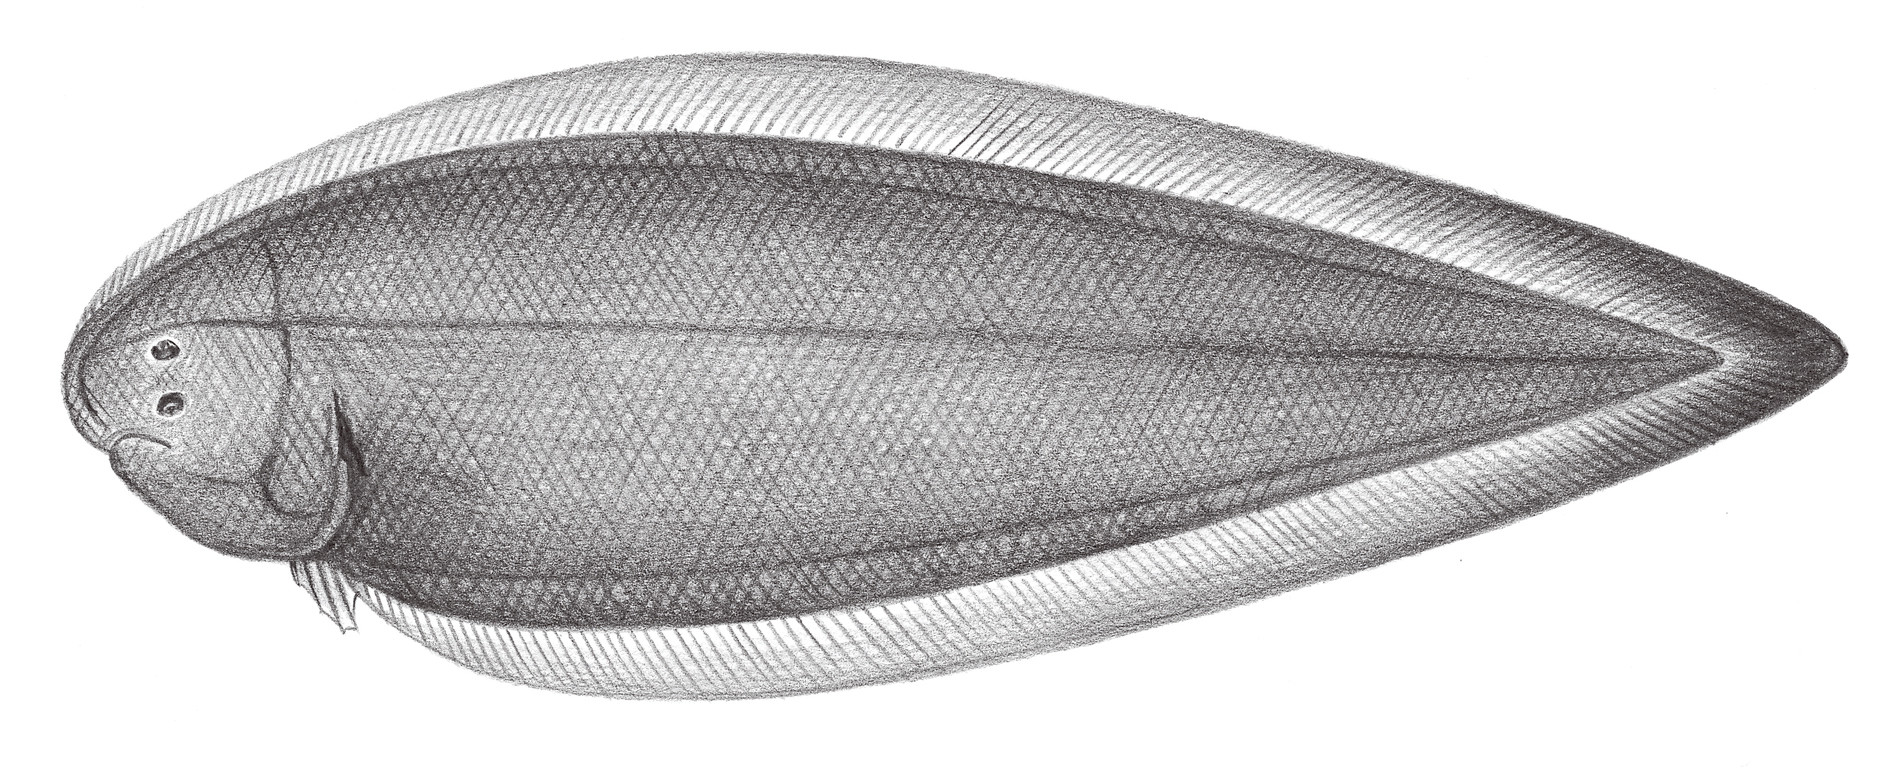 2453.	短舌鰨 Cynoglossus abbreviatus (Gray, 1835)